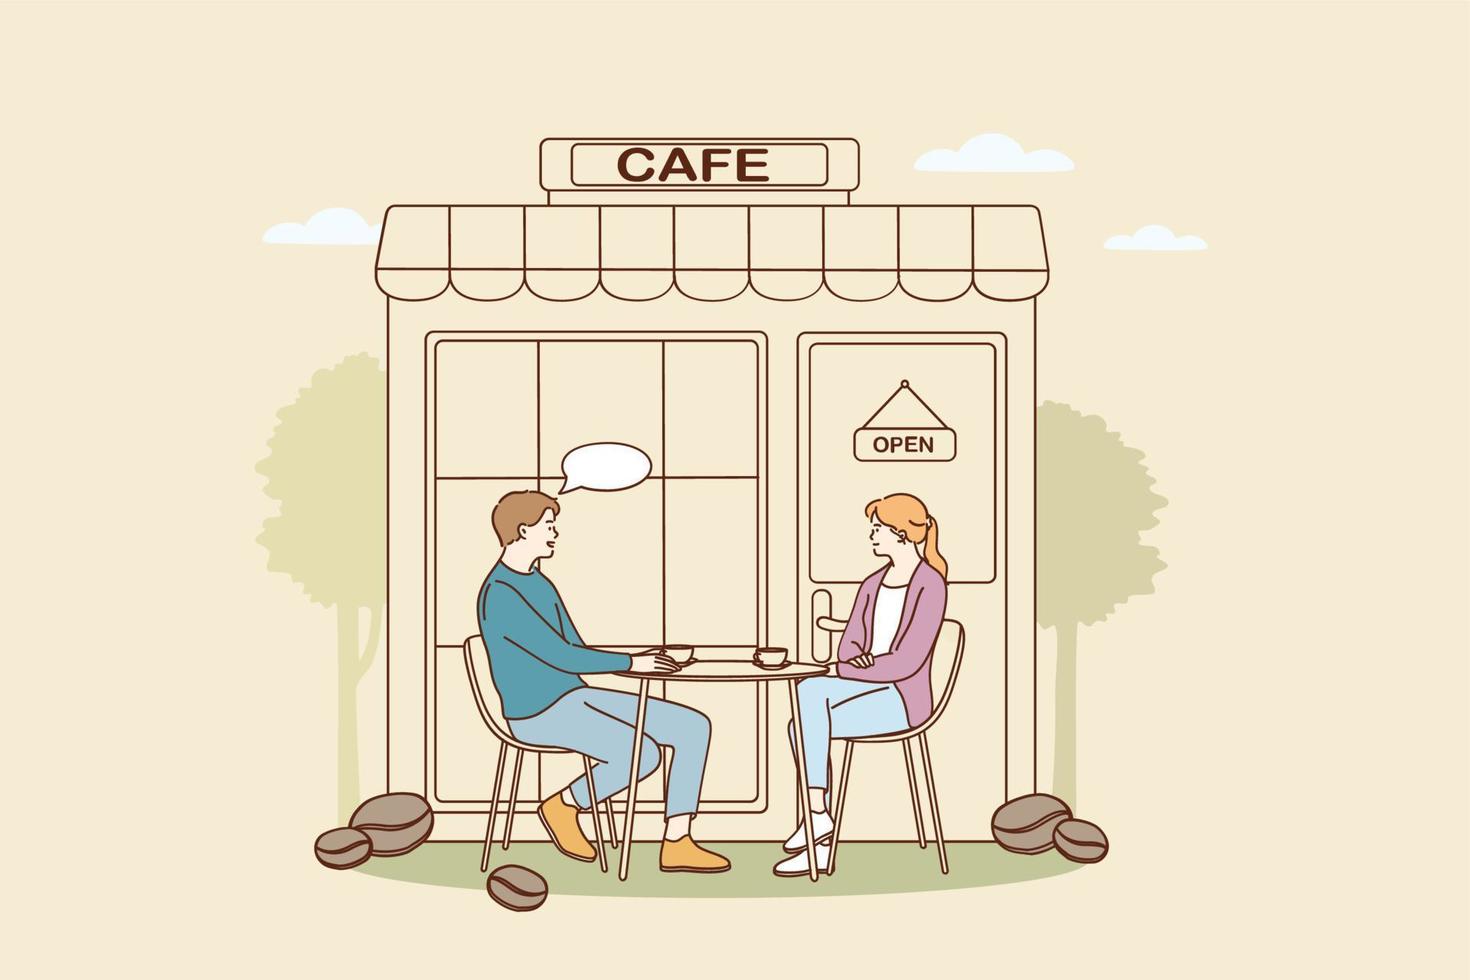 concepto de cafetería y cafetería. jóvenes personajes de dibujos animados de pareja sonriente sentados al aire libre tomando café y charlando en la ilustración de vector de cafetería